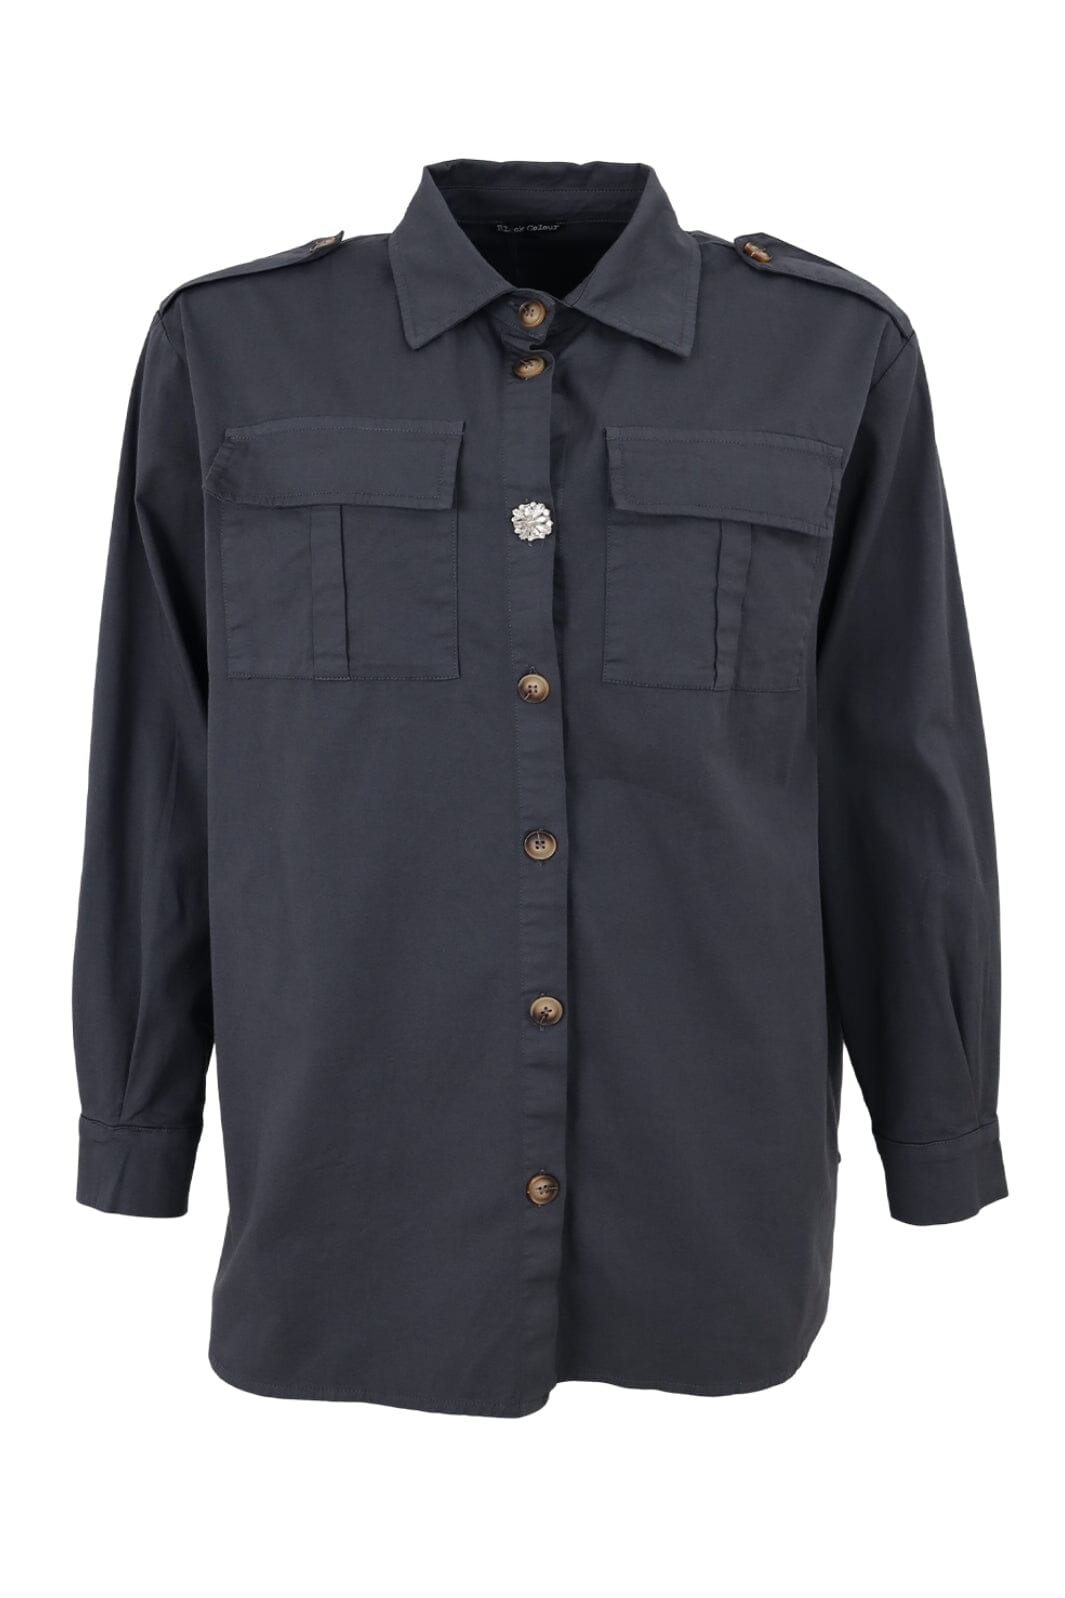 Forudbestilling - Black Colour - Bccanvas Oversize Shirt/Jacket - Dk. Grey Skjorter 